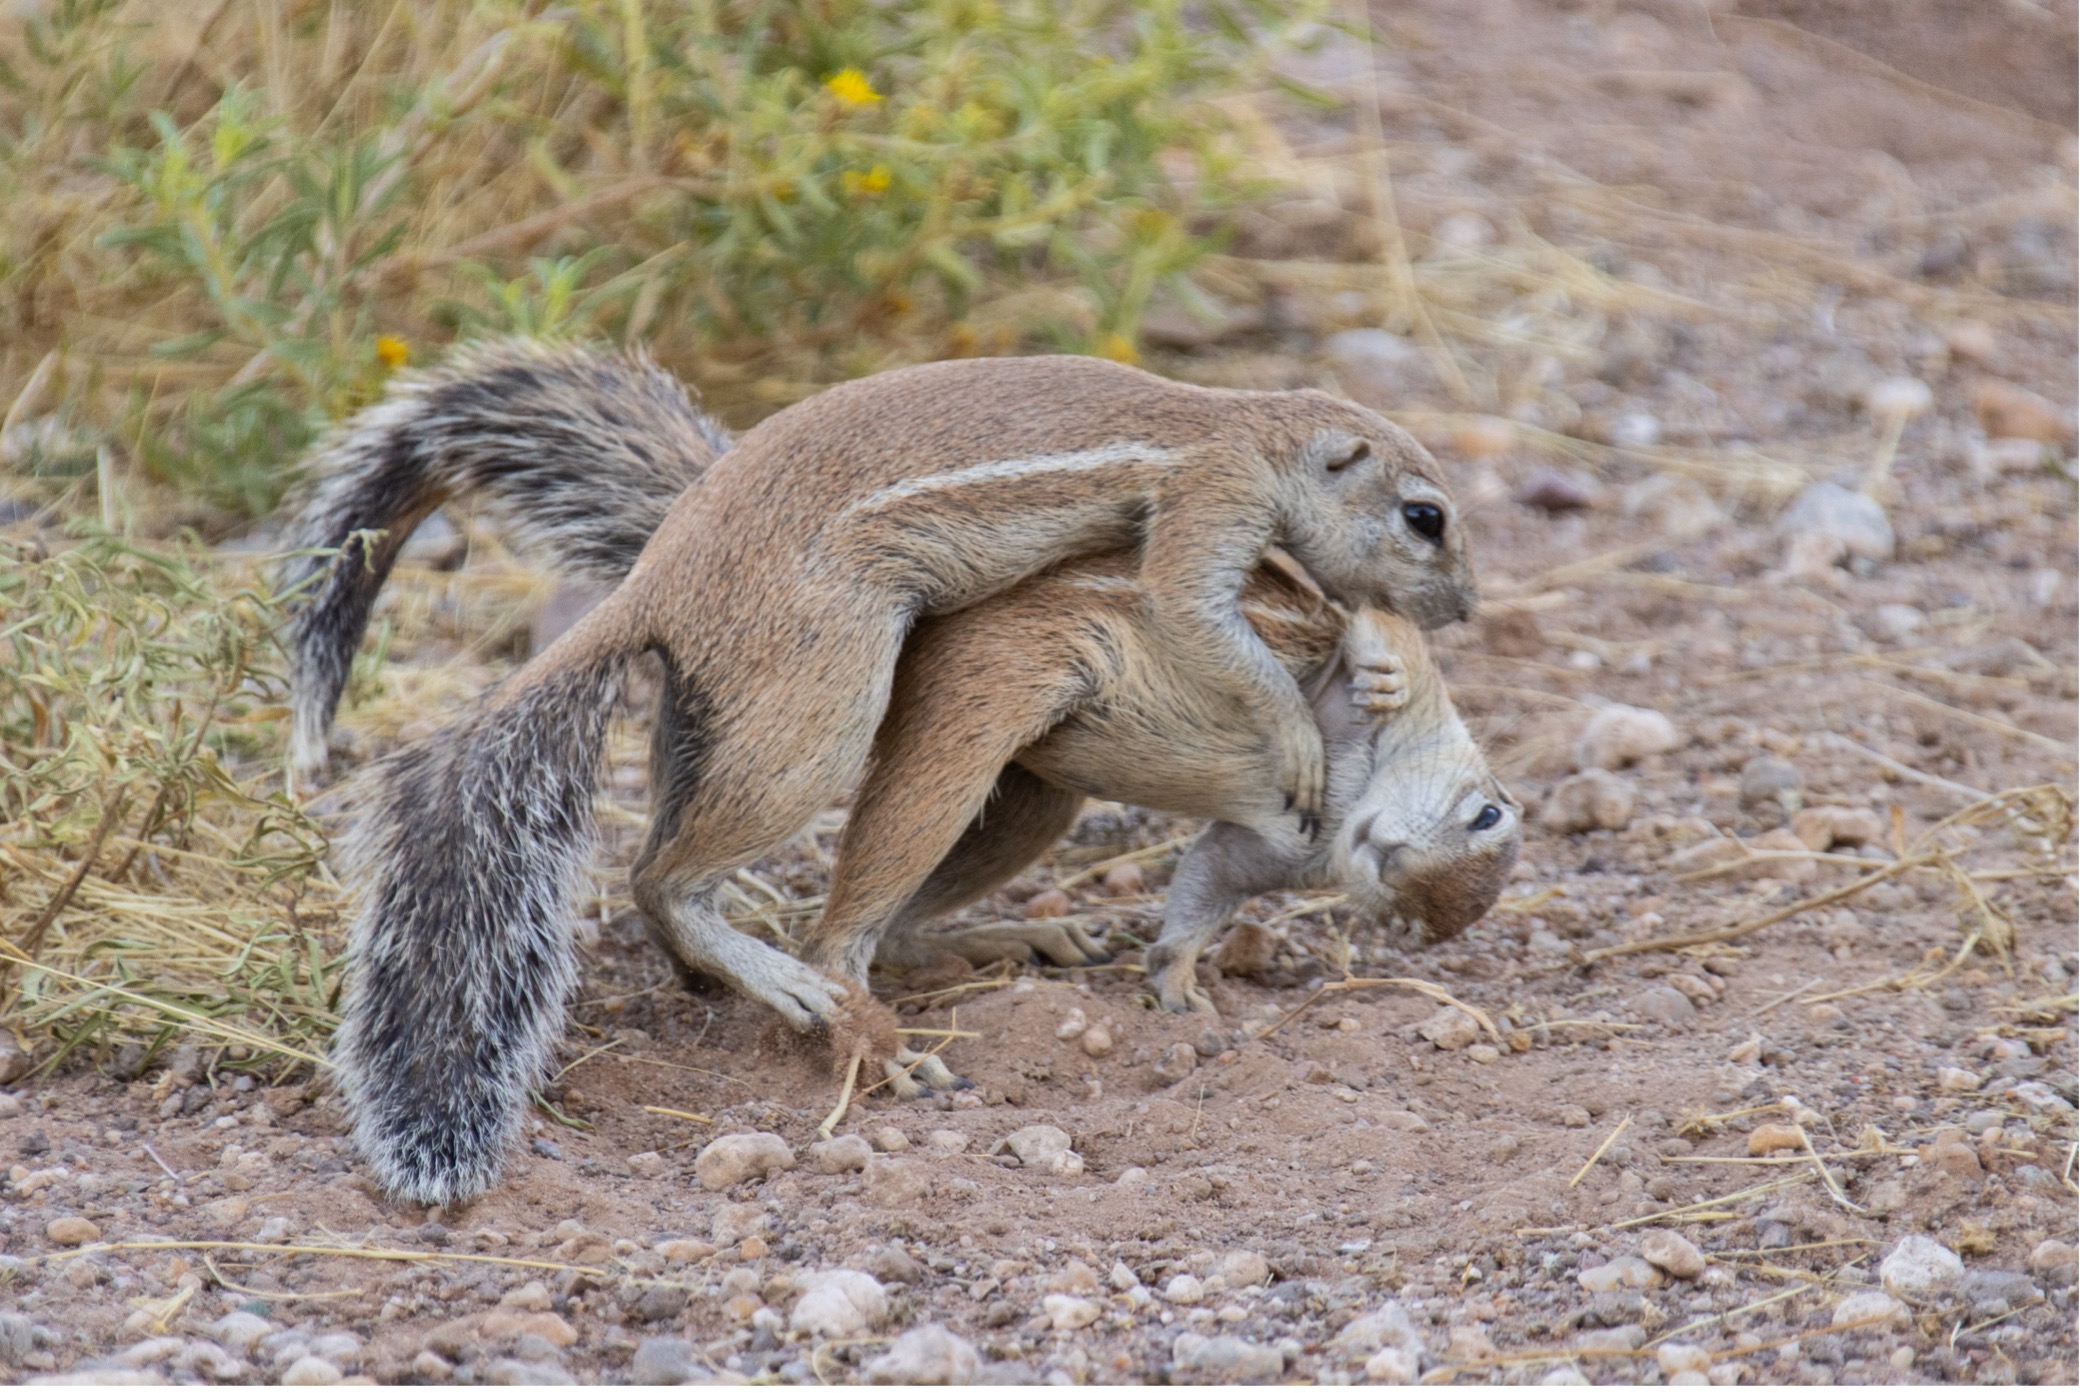 Erdhörnchen - Ground Squirrel